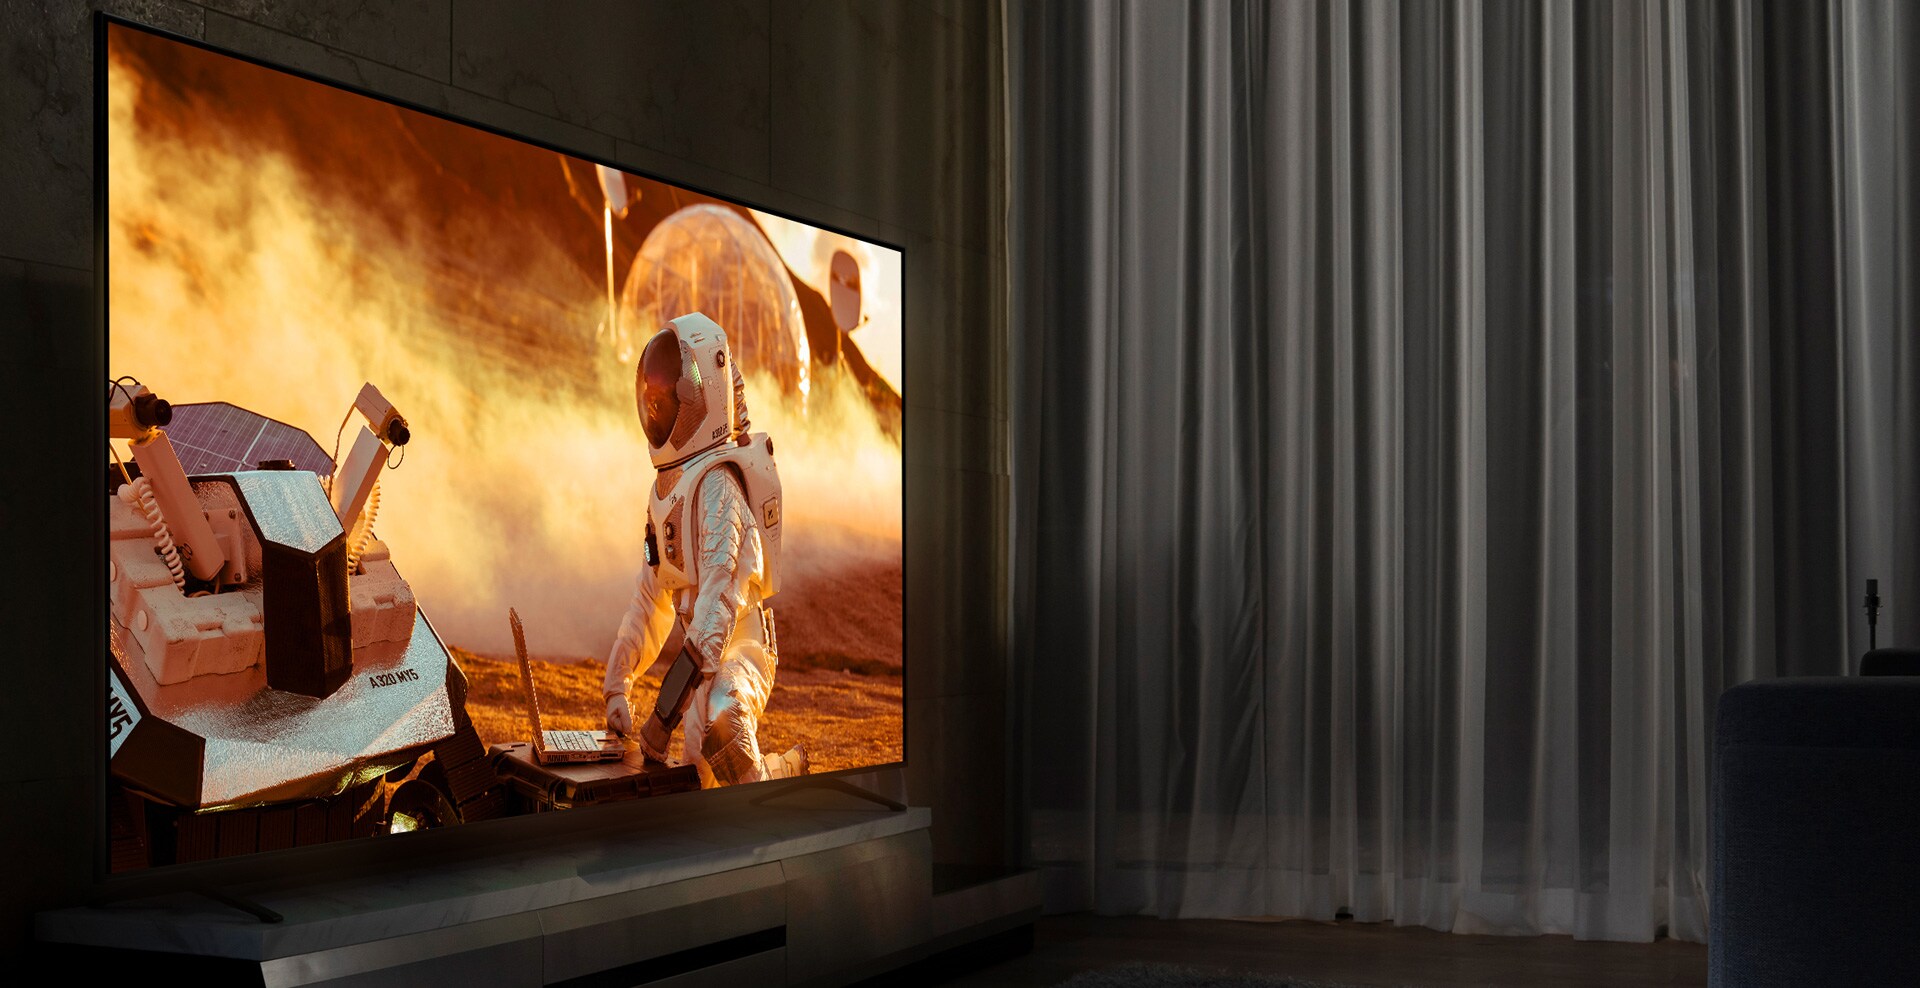 Téléviseur NanoCell dans un salon plongé dans la pénombre. Scène de film diffusée sur l’écran. La technologie NanoCell est illustrée par une amélioration de l’image en dessous du téléviseur.